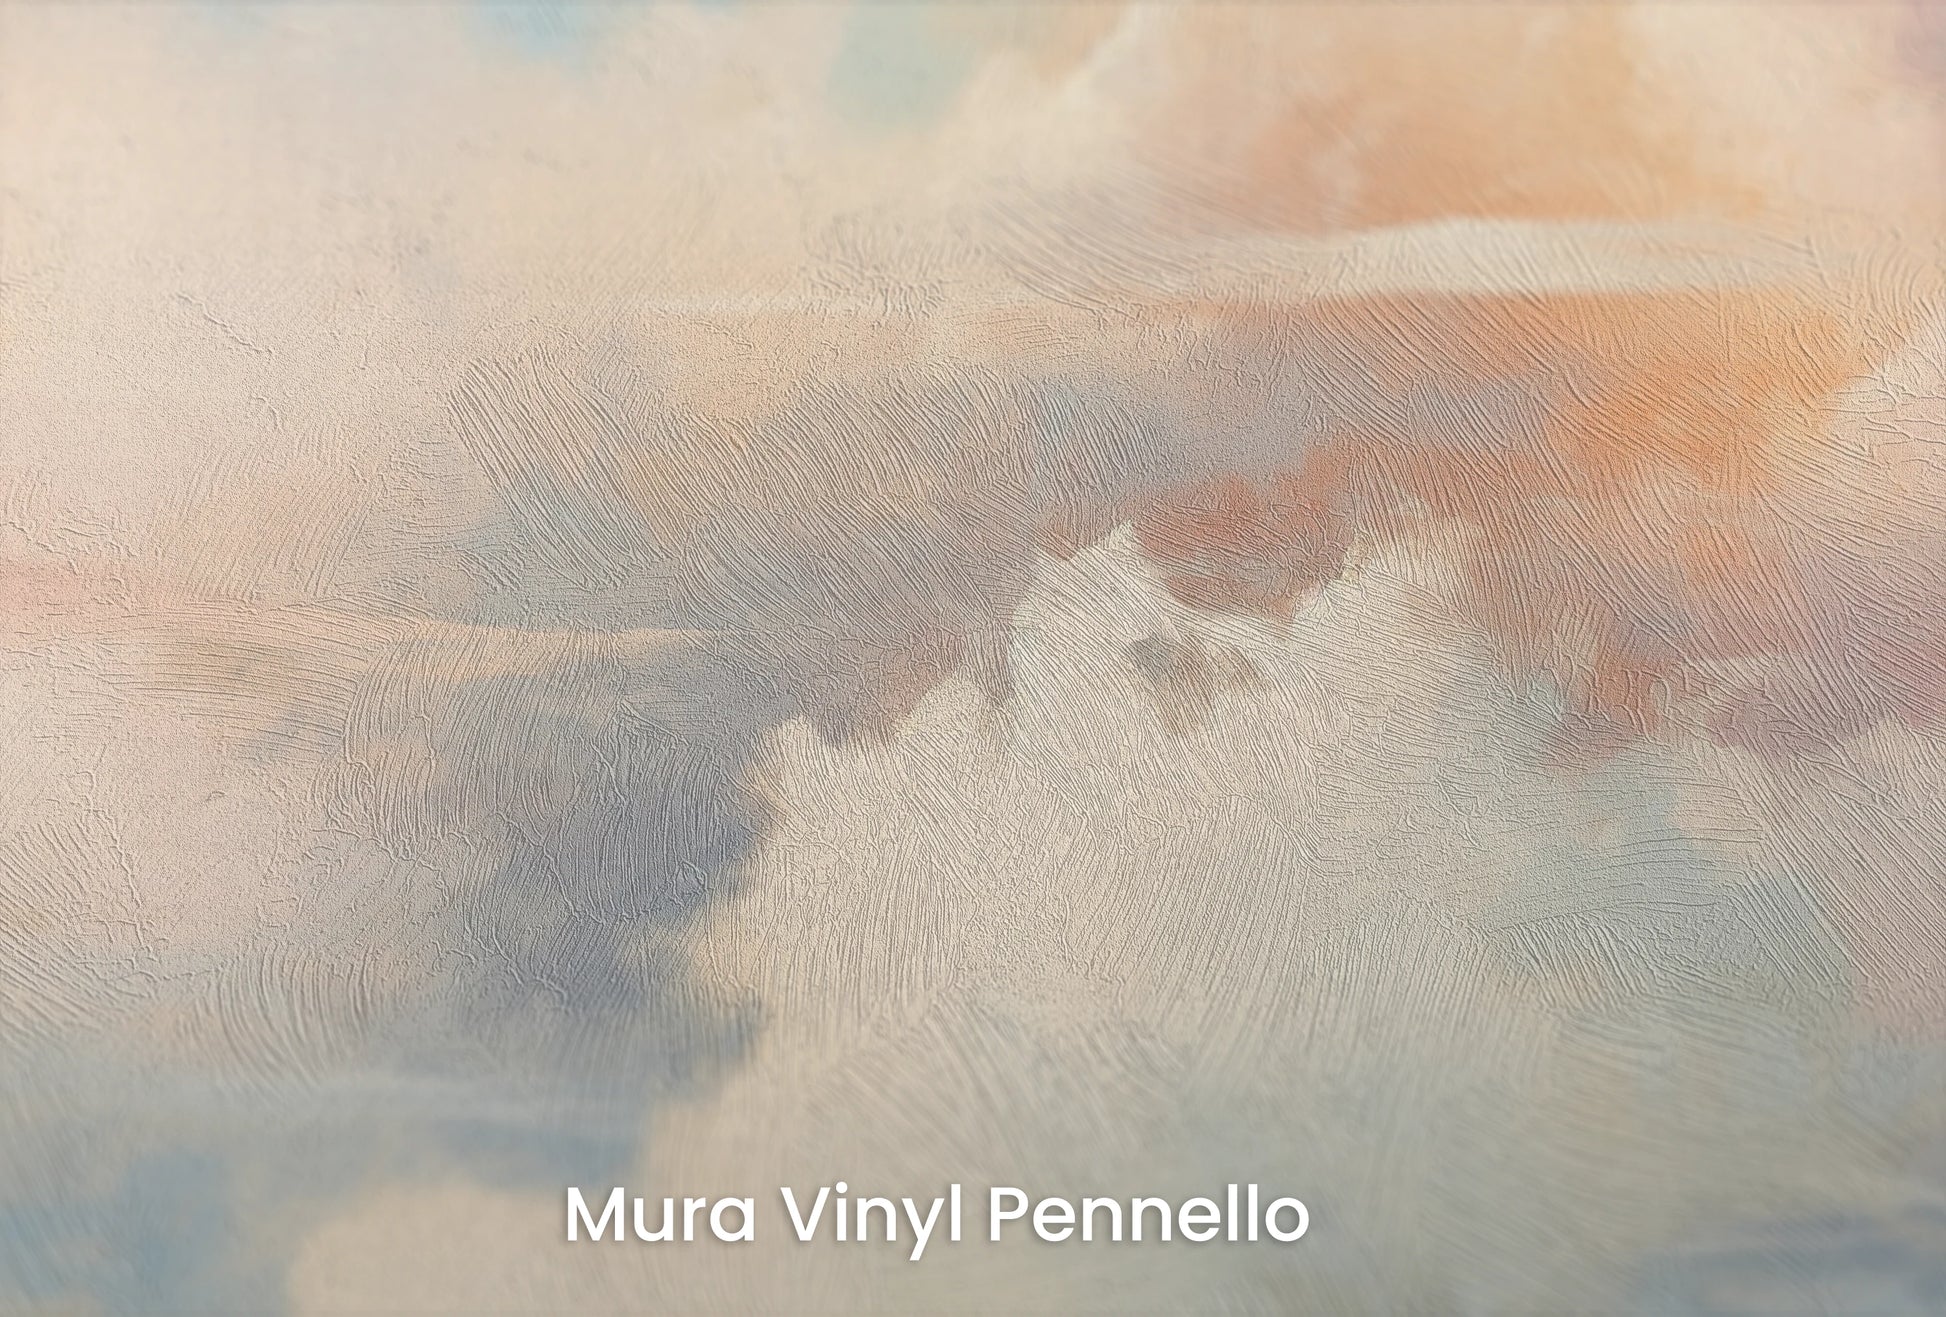 Zbliżenie na artystyczną fototapetę o nazwie Whispering Hues na podłożu Mura Vinyl Pennello - faktura pociągnięć pędzla malarskiego.